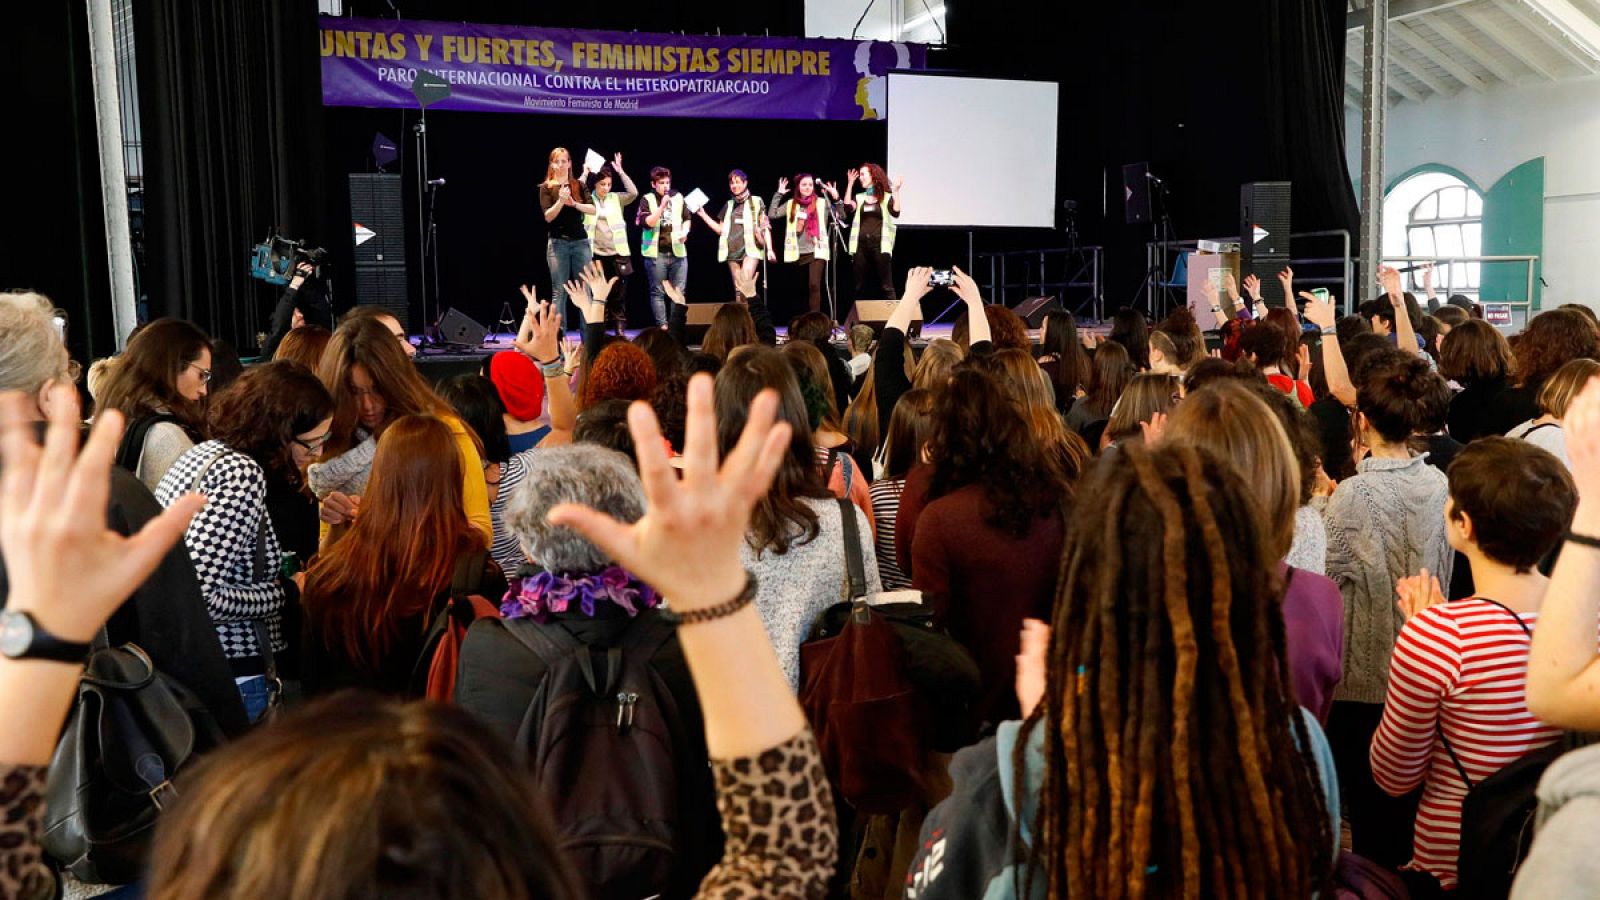 El movimiento feminista de Madrid celebra un "eventazo", para apoyar la huelga feminista del próximo 8 de mayo, en el Matadero de Madrid